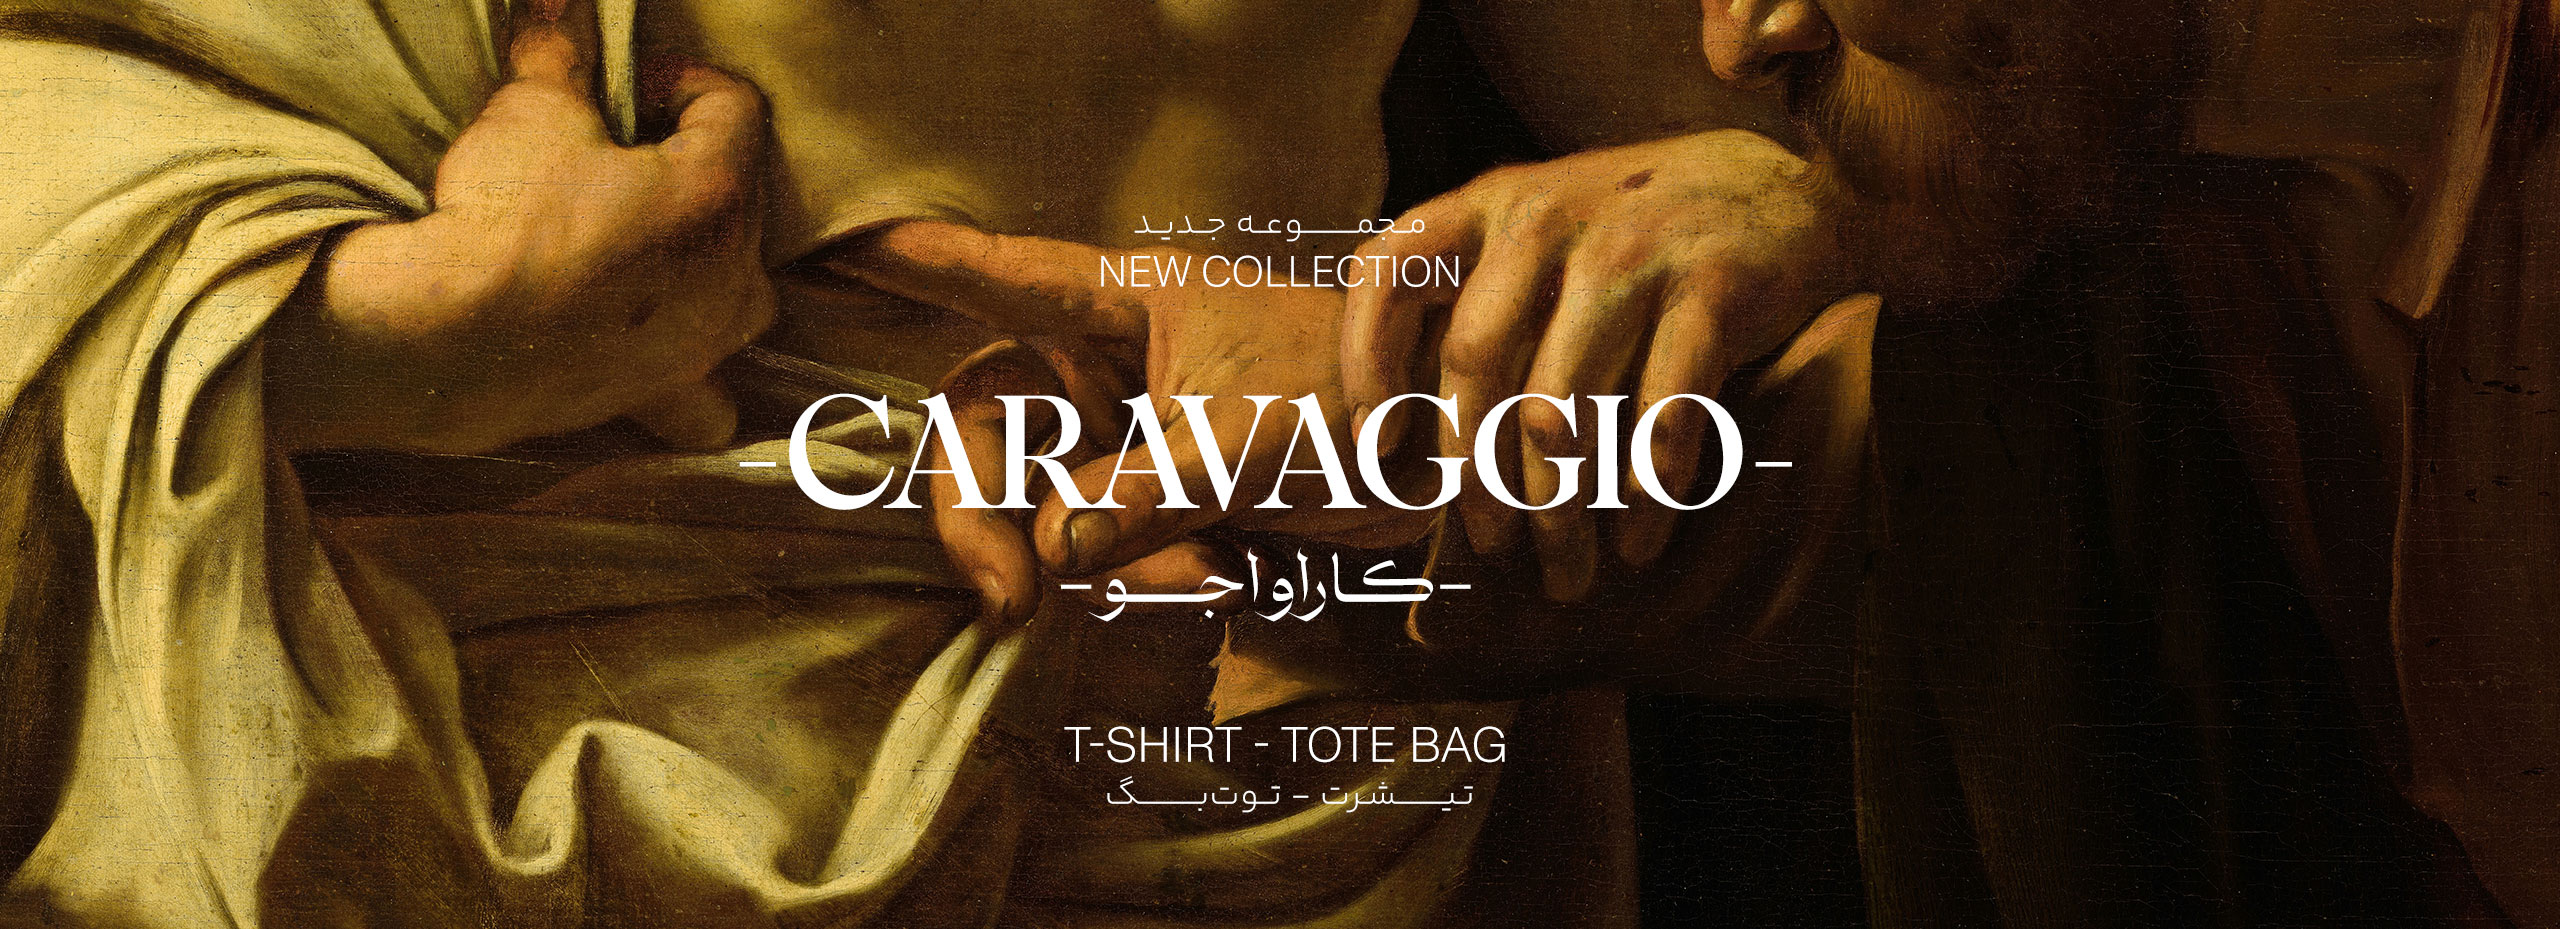 caravaggio-banner2